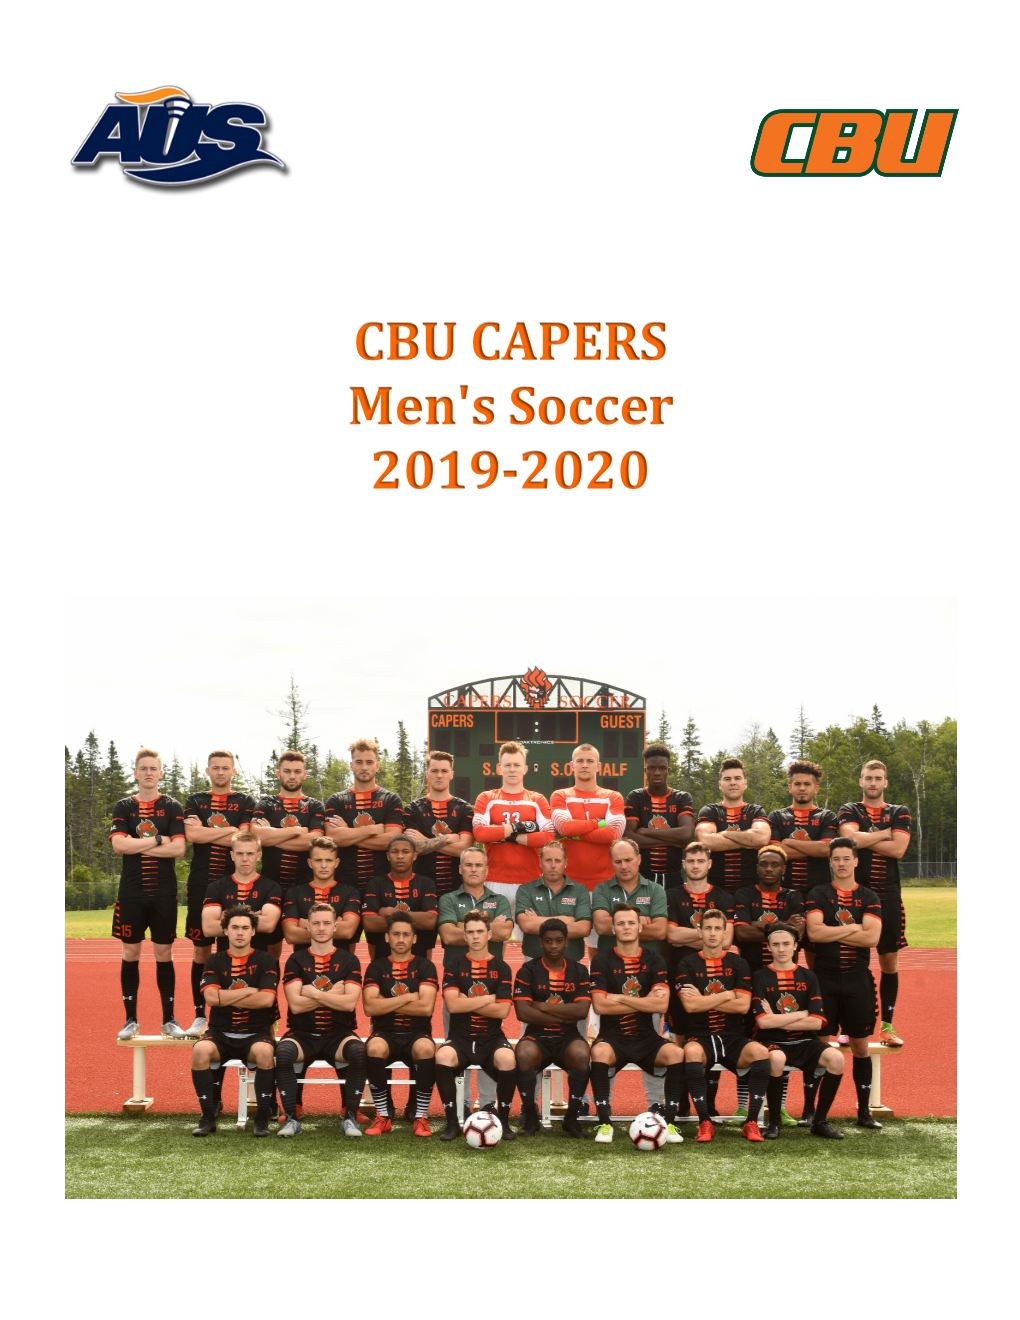 CBU CAPERS Men's Soccer 2019-2020